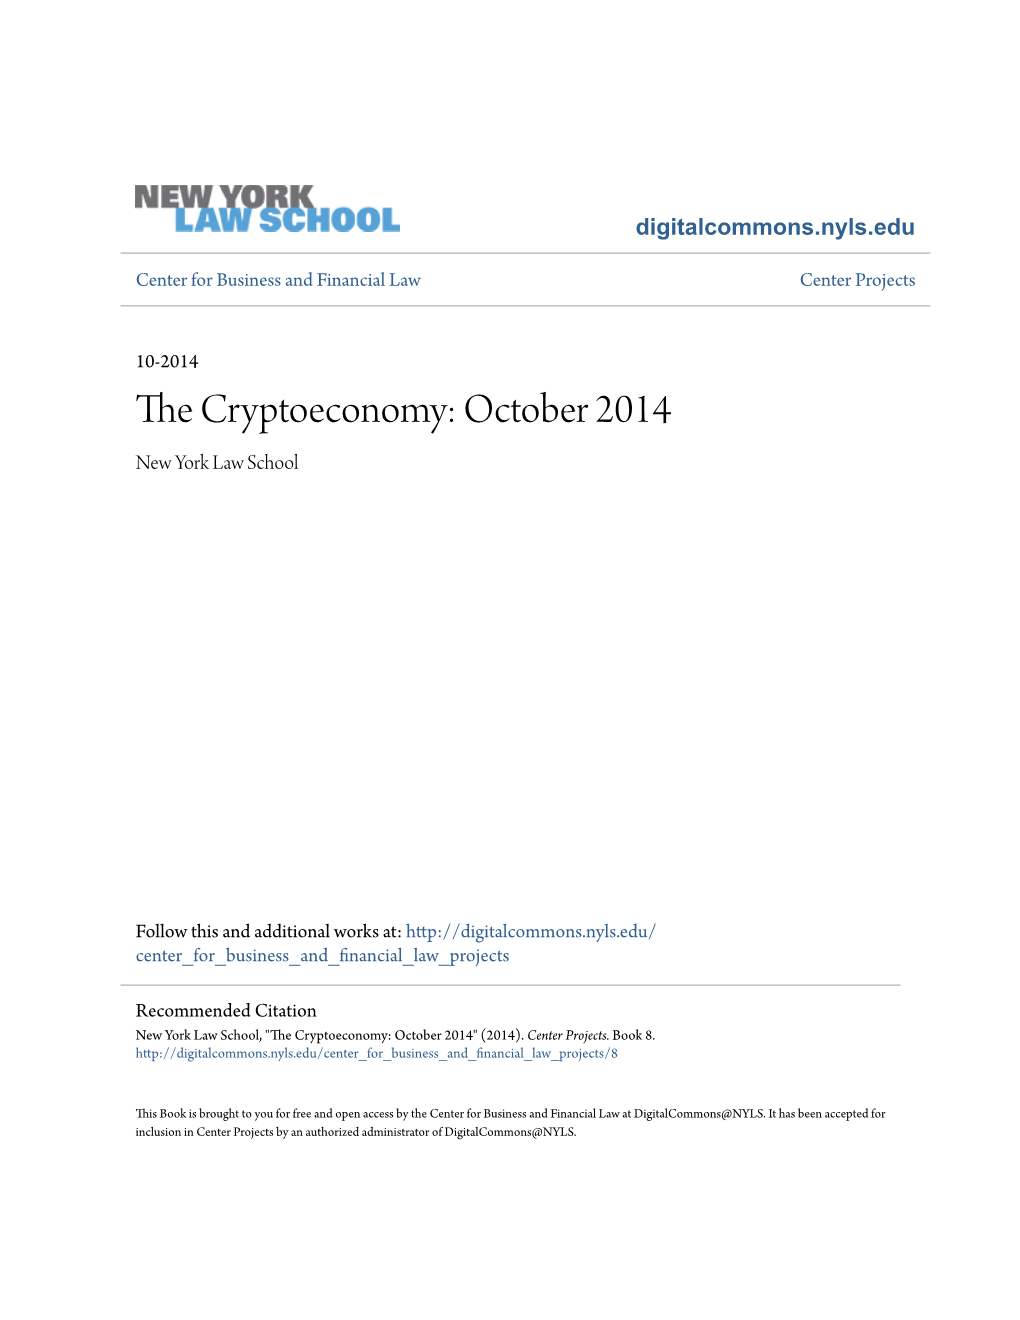 The Cryptoeconomy: October 2014